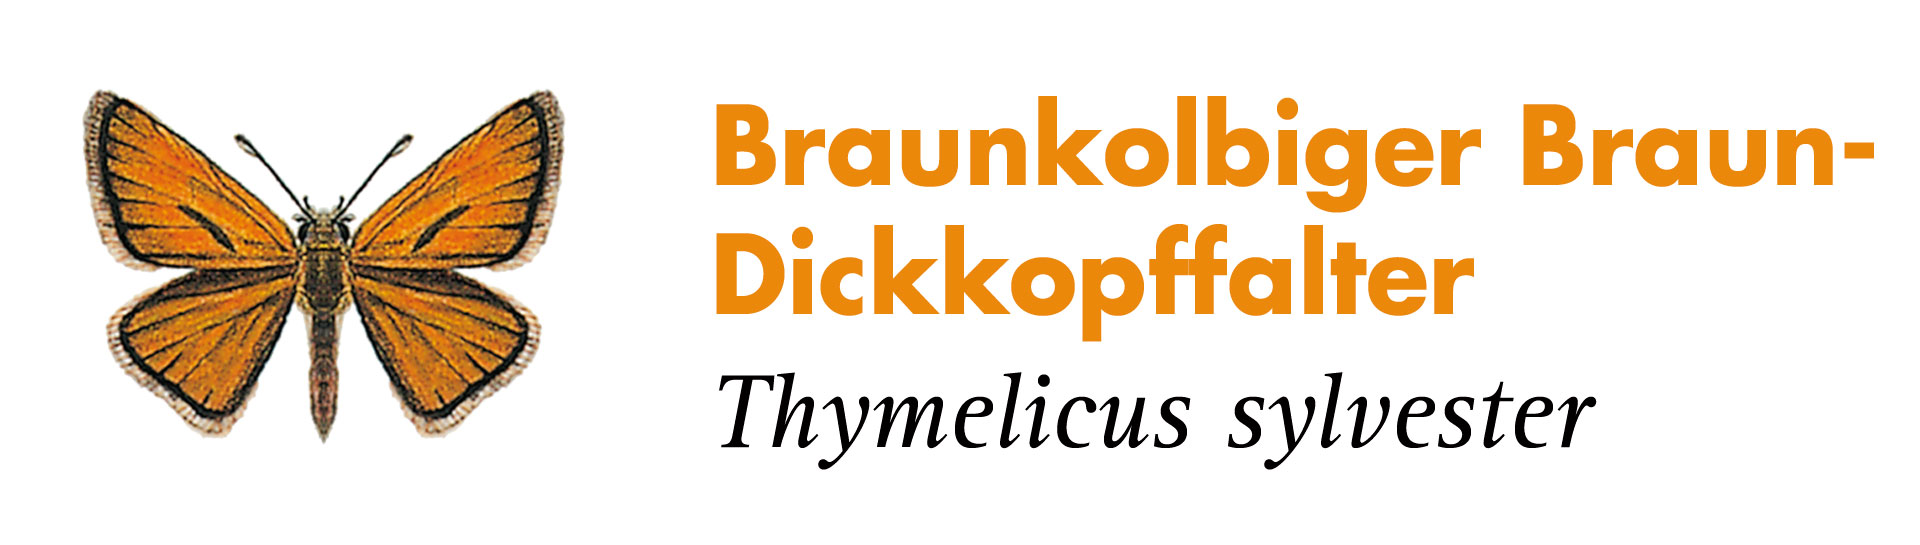 Braunkolbiger Braun-Dickkopffalter. Grafik: Haupt Verlag AG